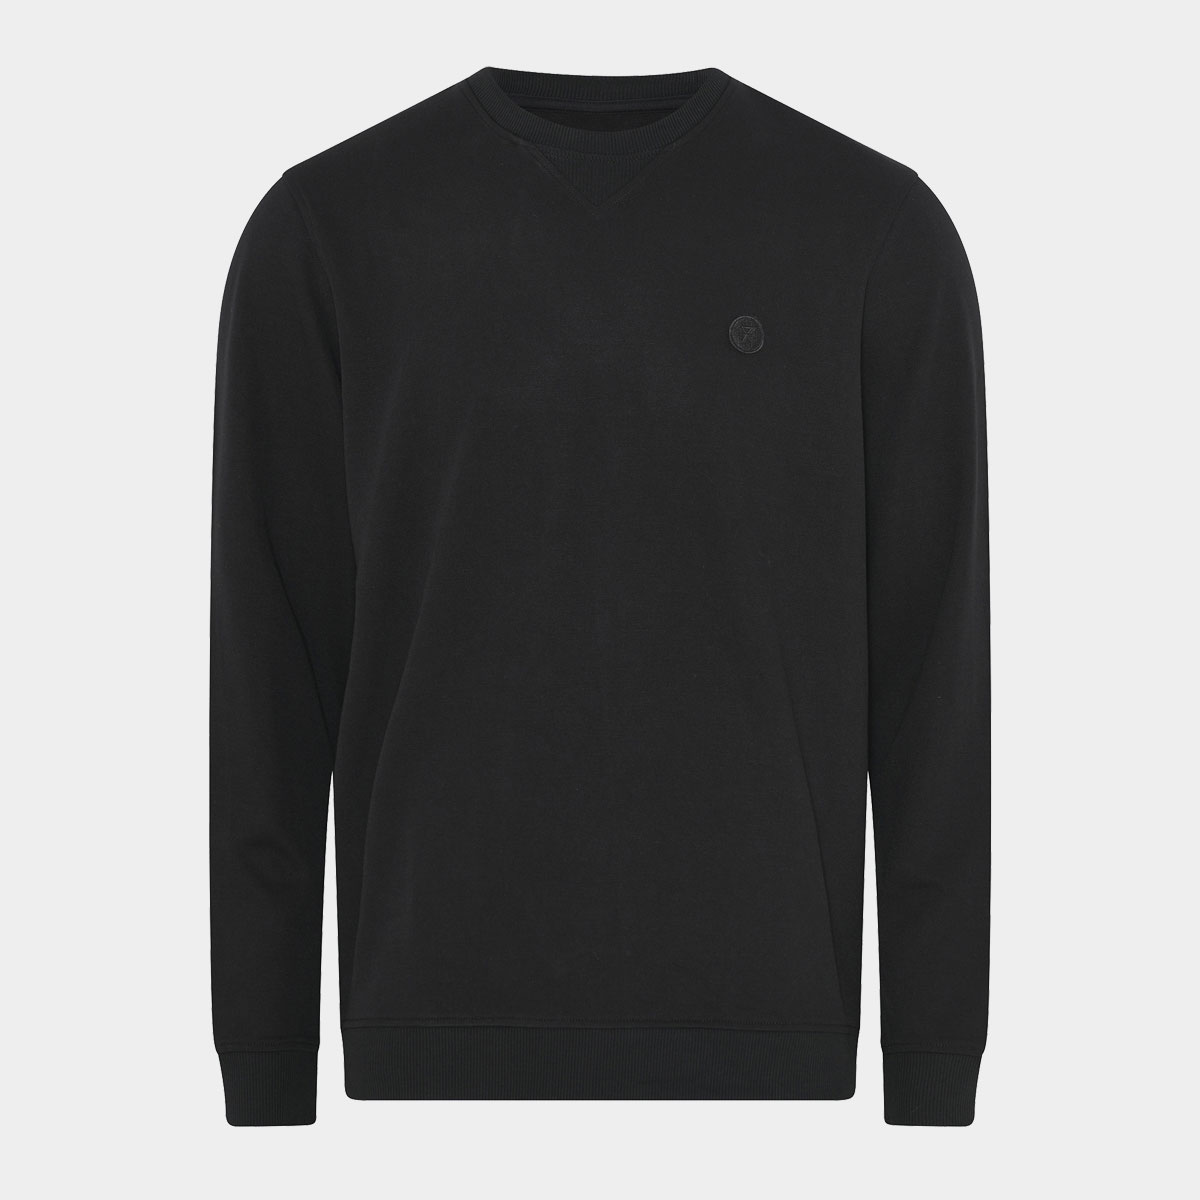 Billede af Bambus sweatshirt | sort sweatshirt til mænd fra JBS of Denmark, XXXL